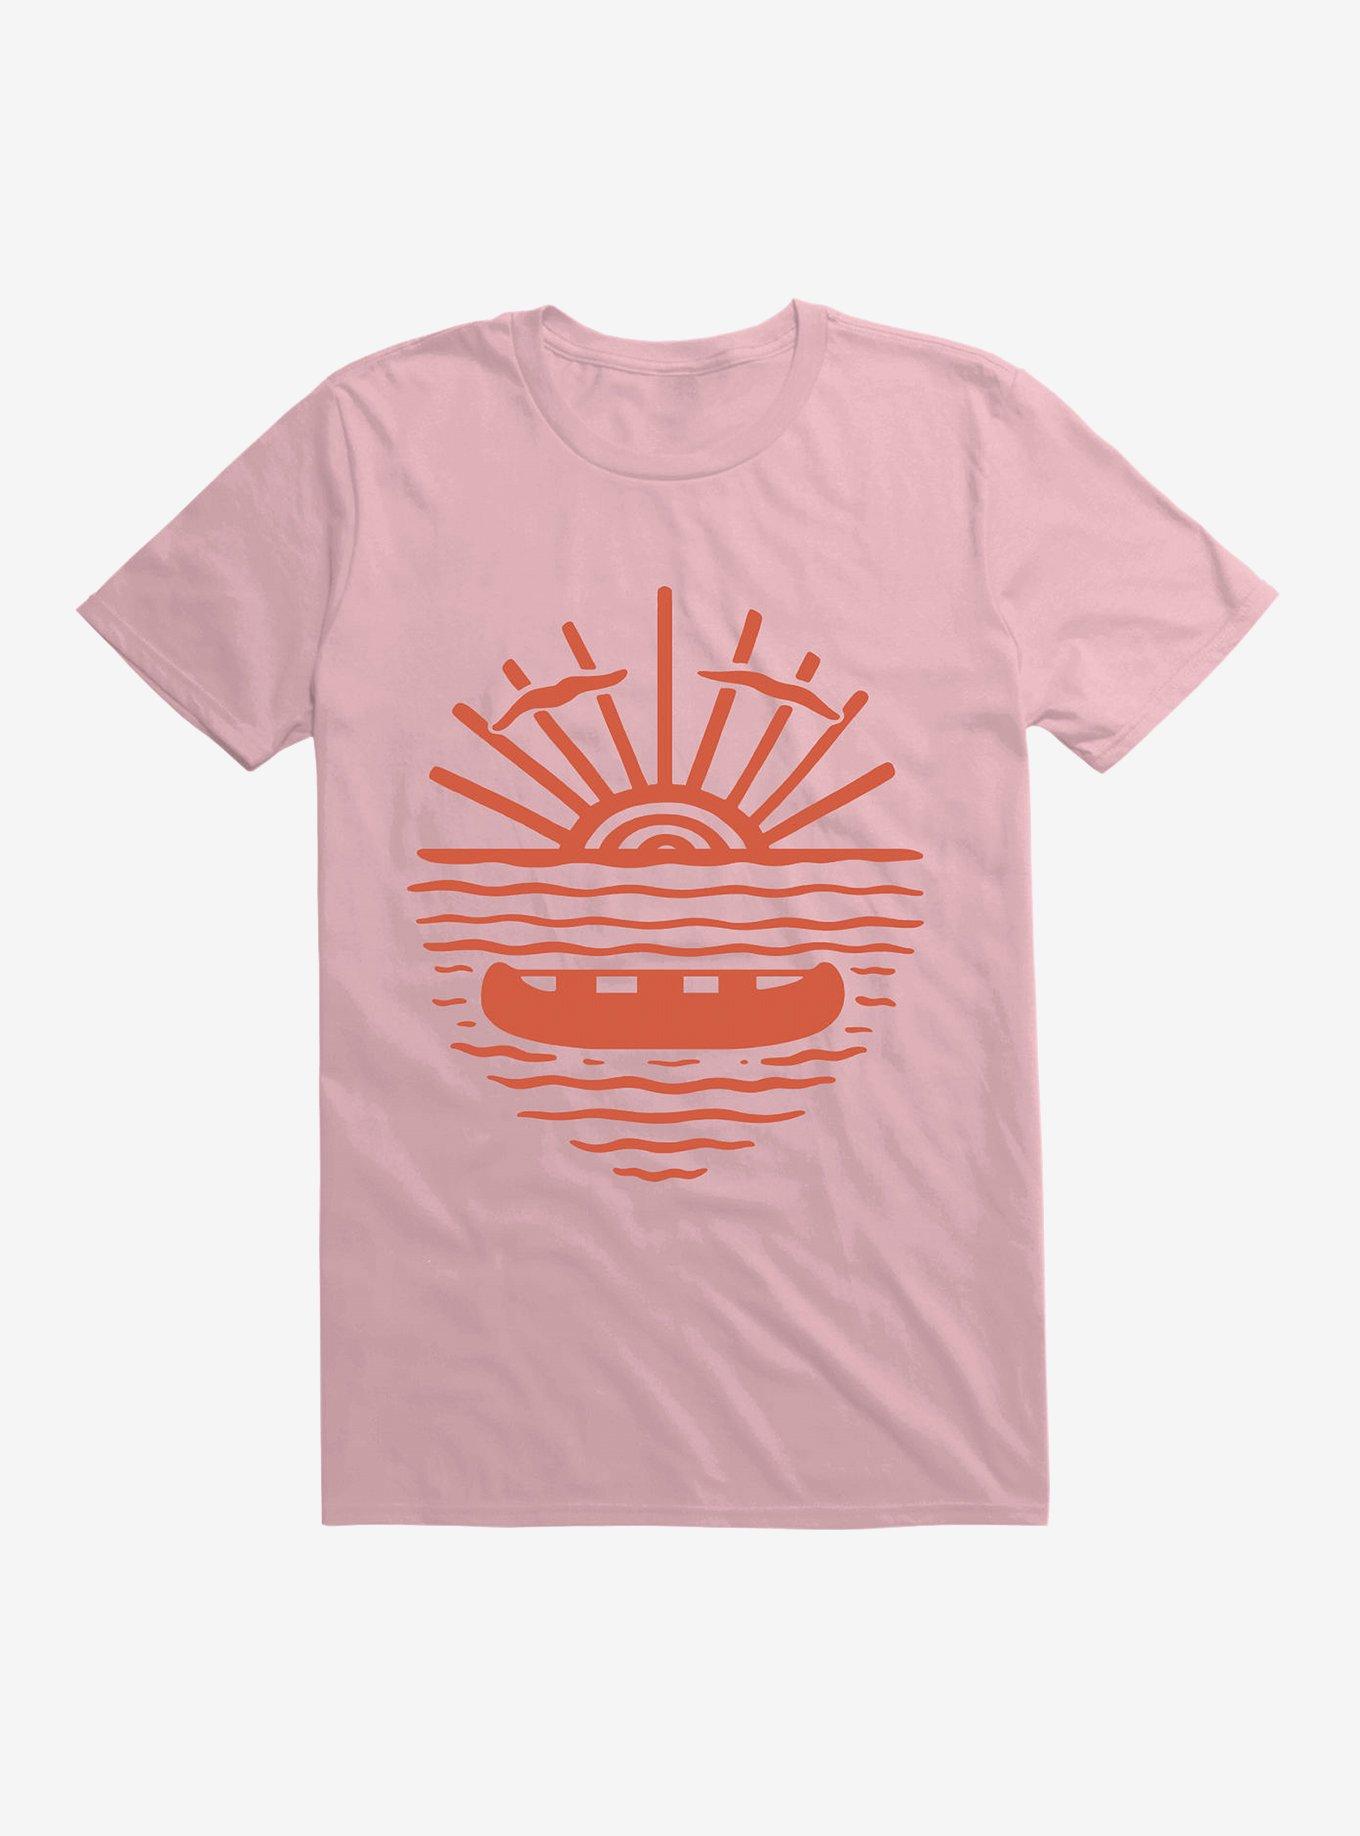 A New Wave T-Shirt, LIGHT PINK, hi-res